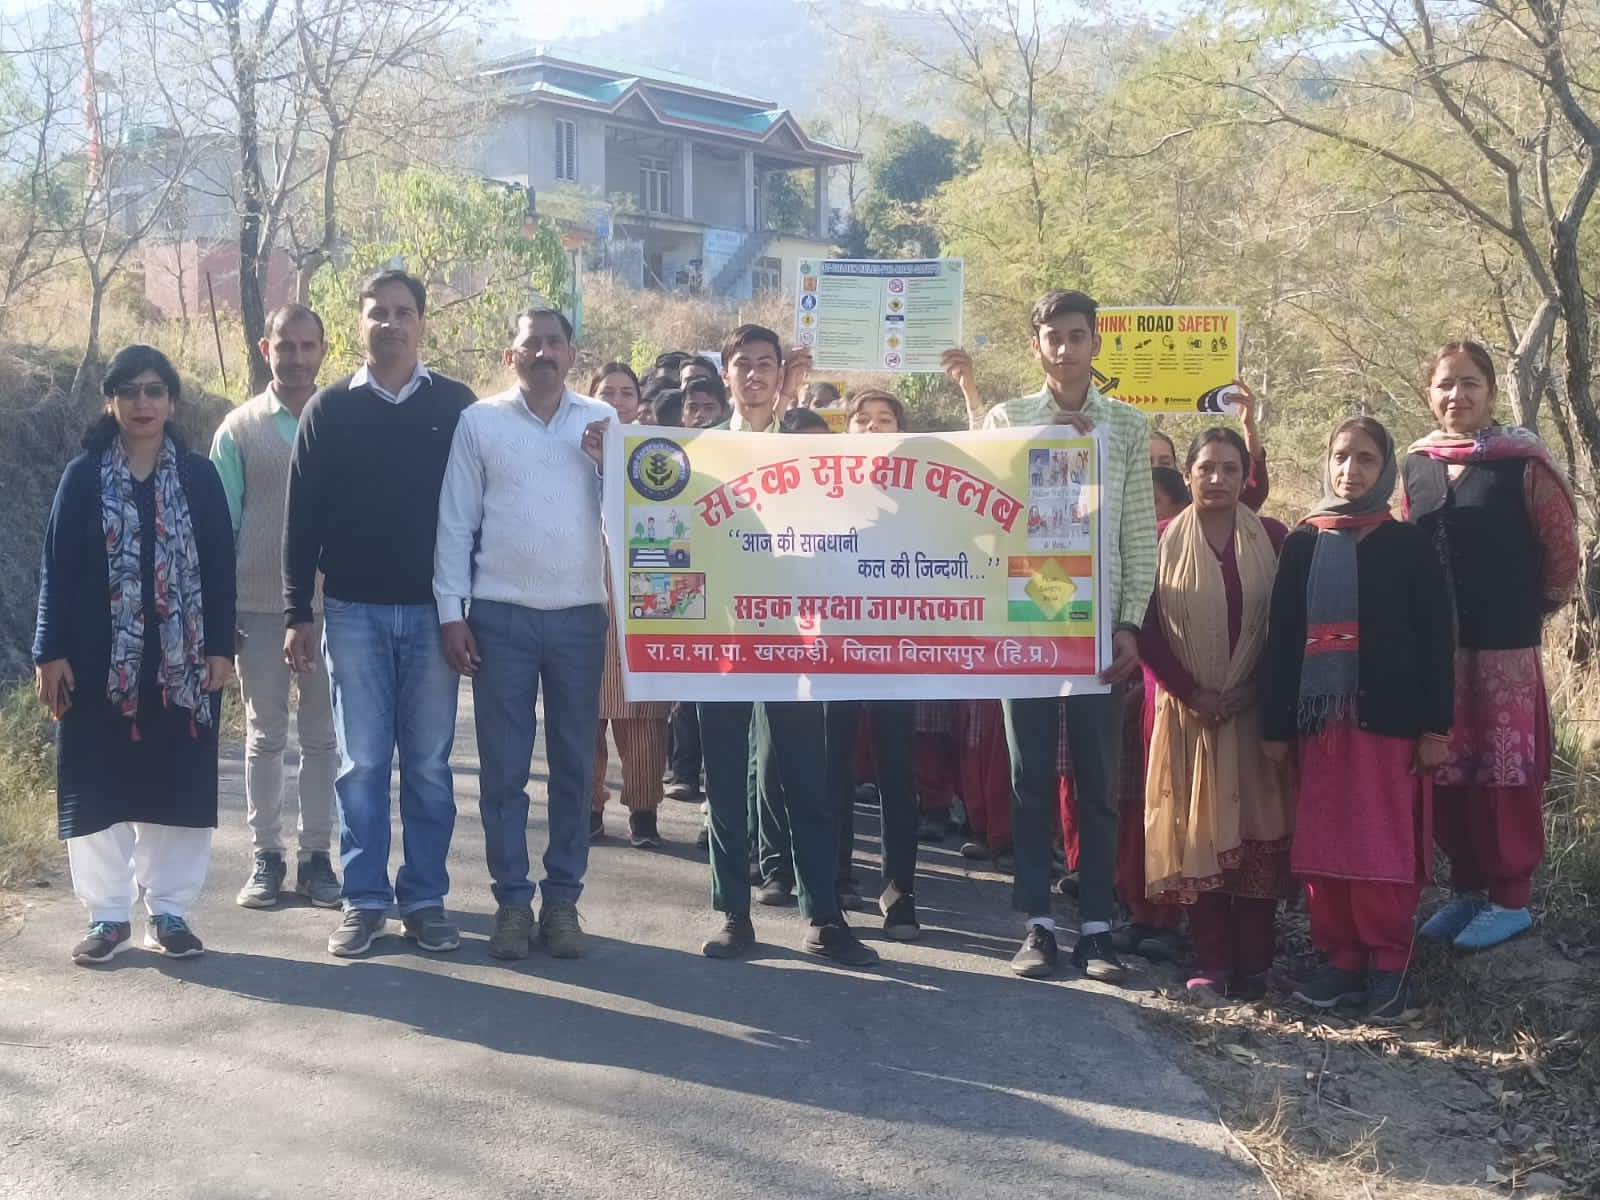 पंचायत खरकडी गांव में राजकीय वरिष्ठ माध्यमिक पाठशाला के छात्र एवं छात्राओं ने सड़क सुरक्षा को लेकर जागरूकता रैली निकाली !